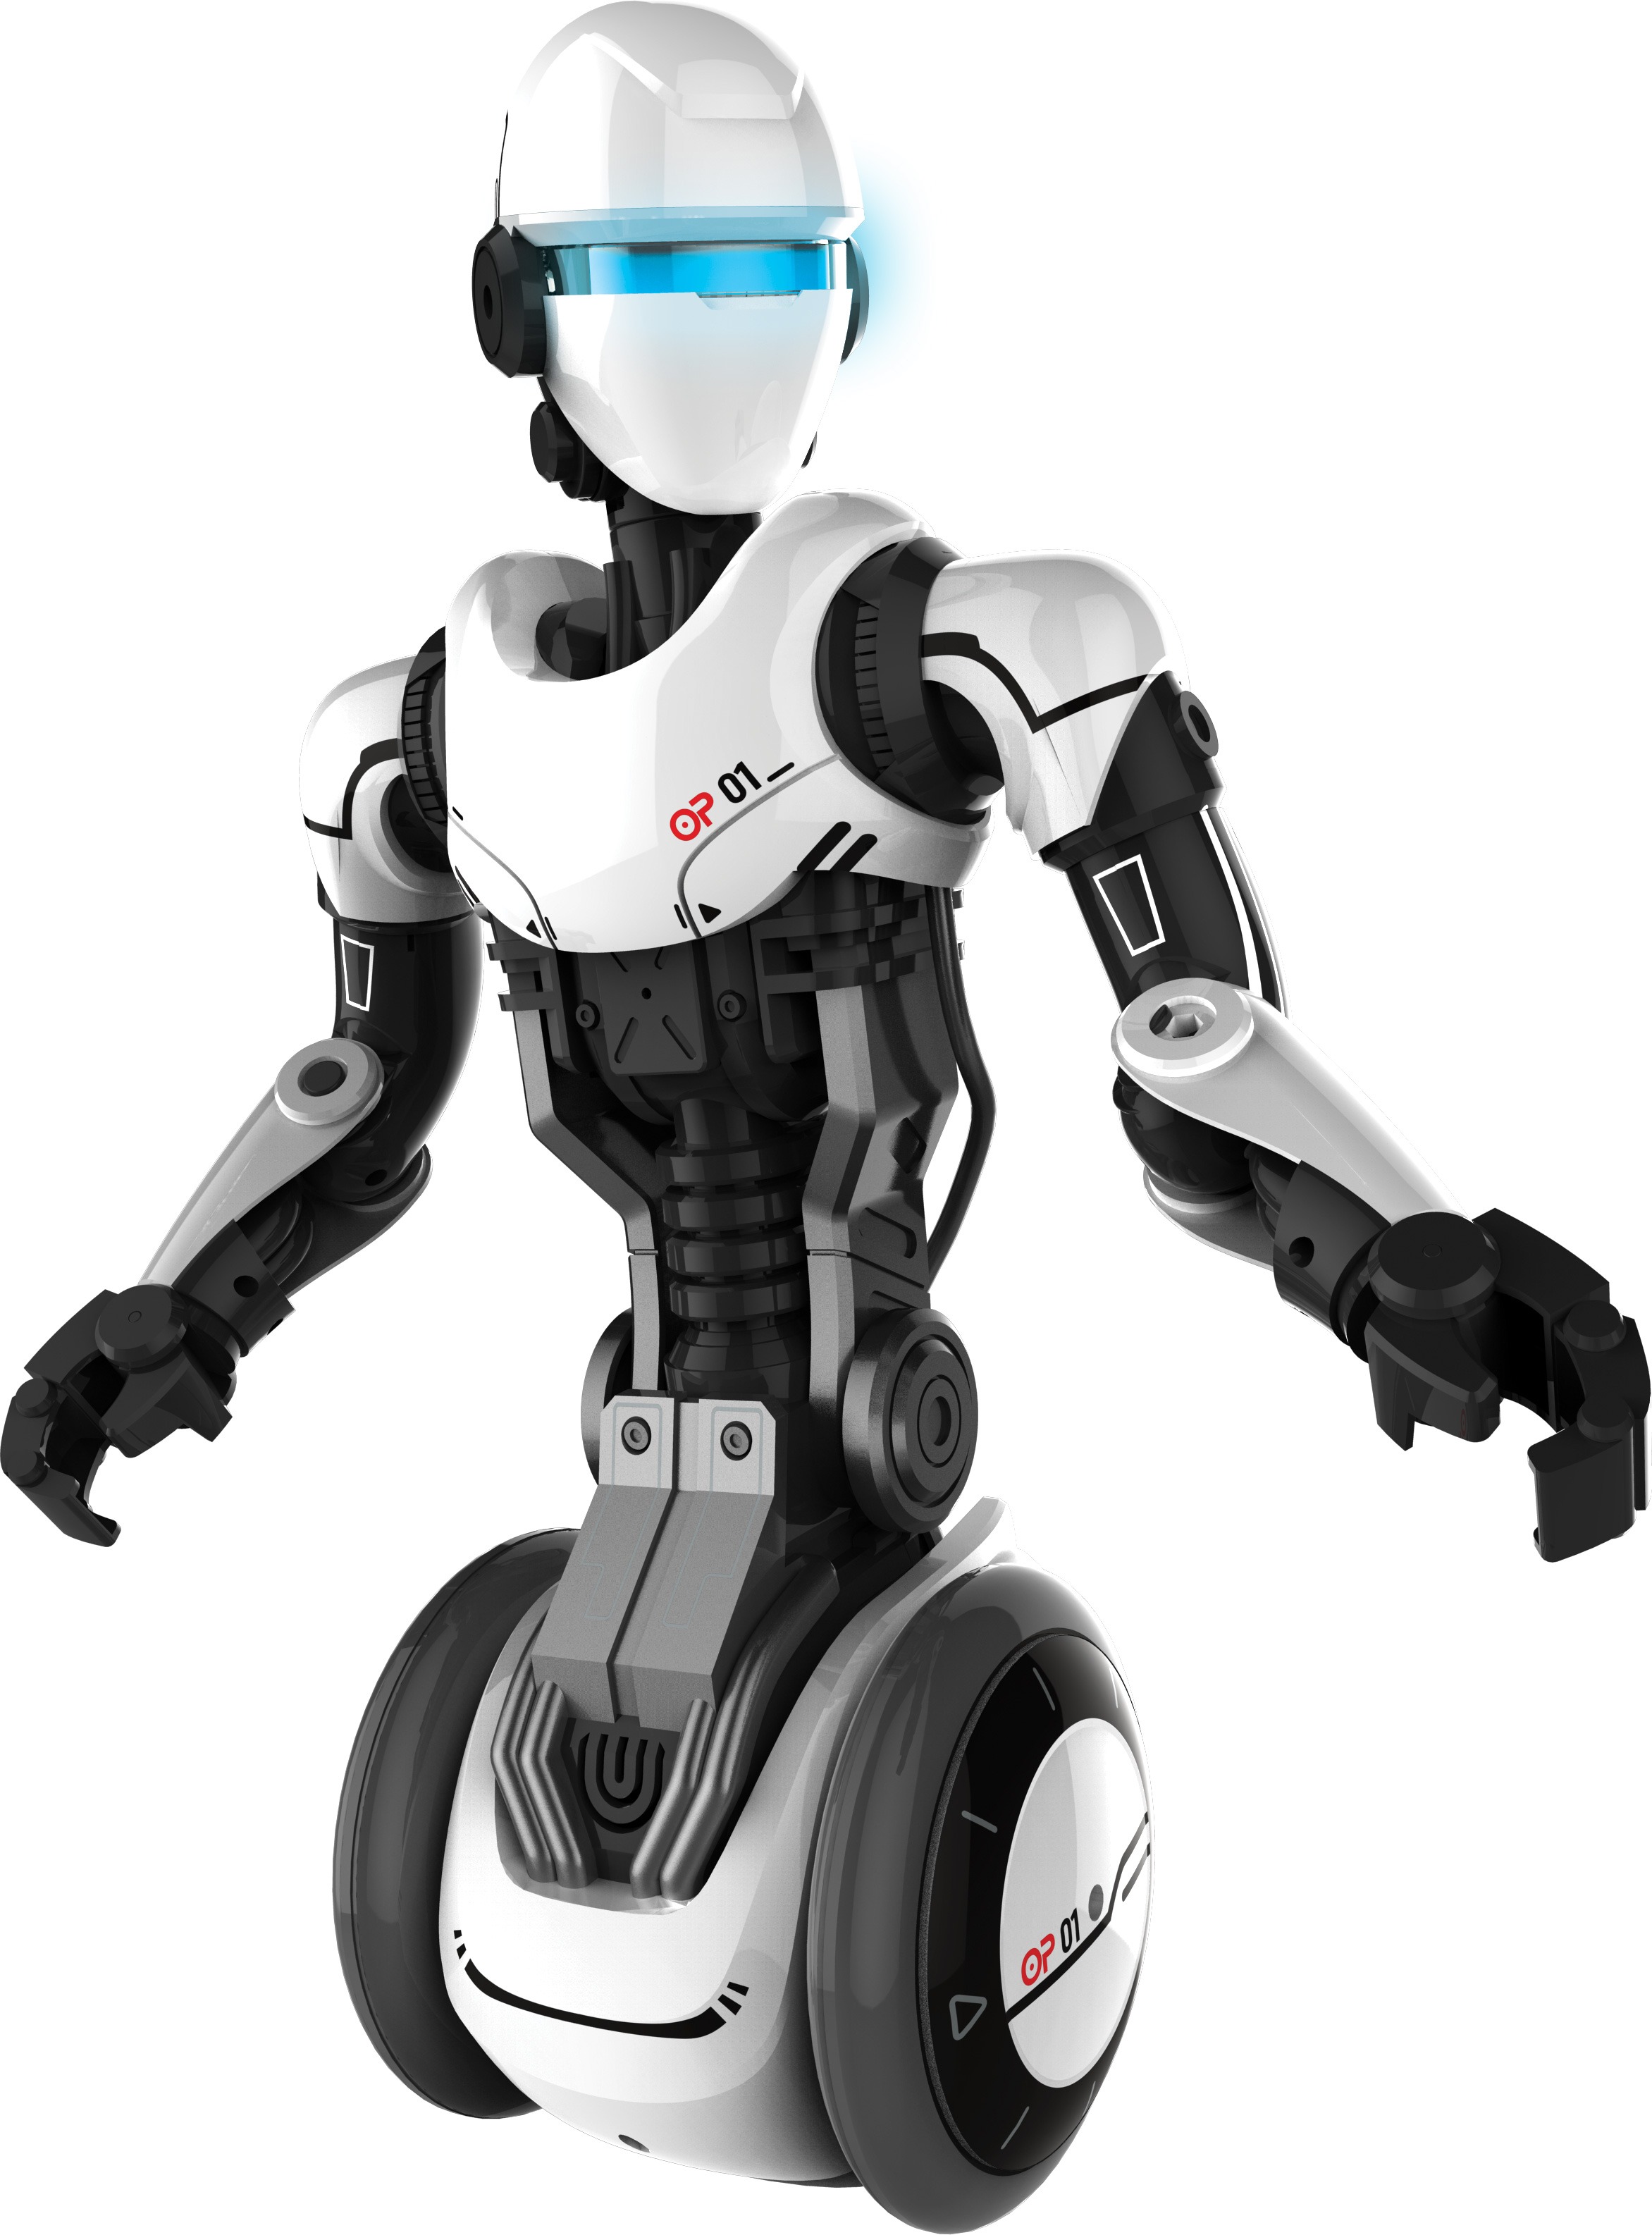 Робот с управлением с телефона. Робот Ycoo 88550s o.p. one. Робот Silverlit Ycoo. Робот Silverlit o.p.one 88550. Silverlit роботы Робокомбат.